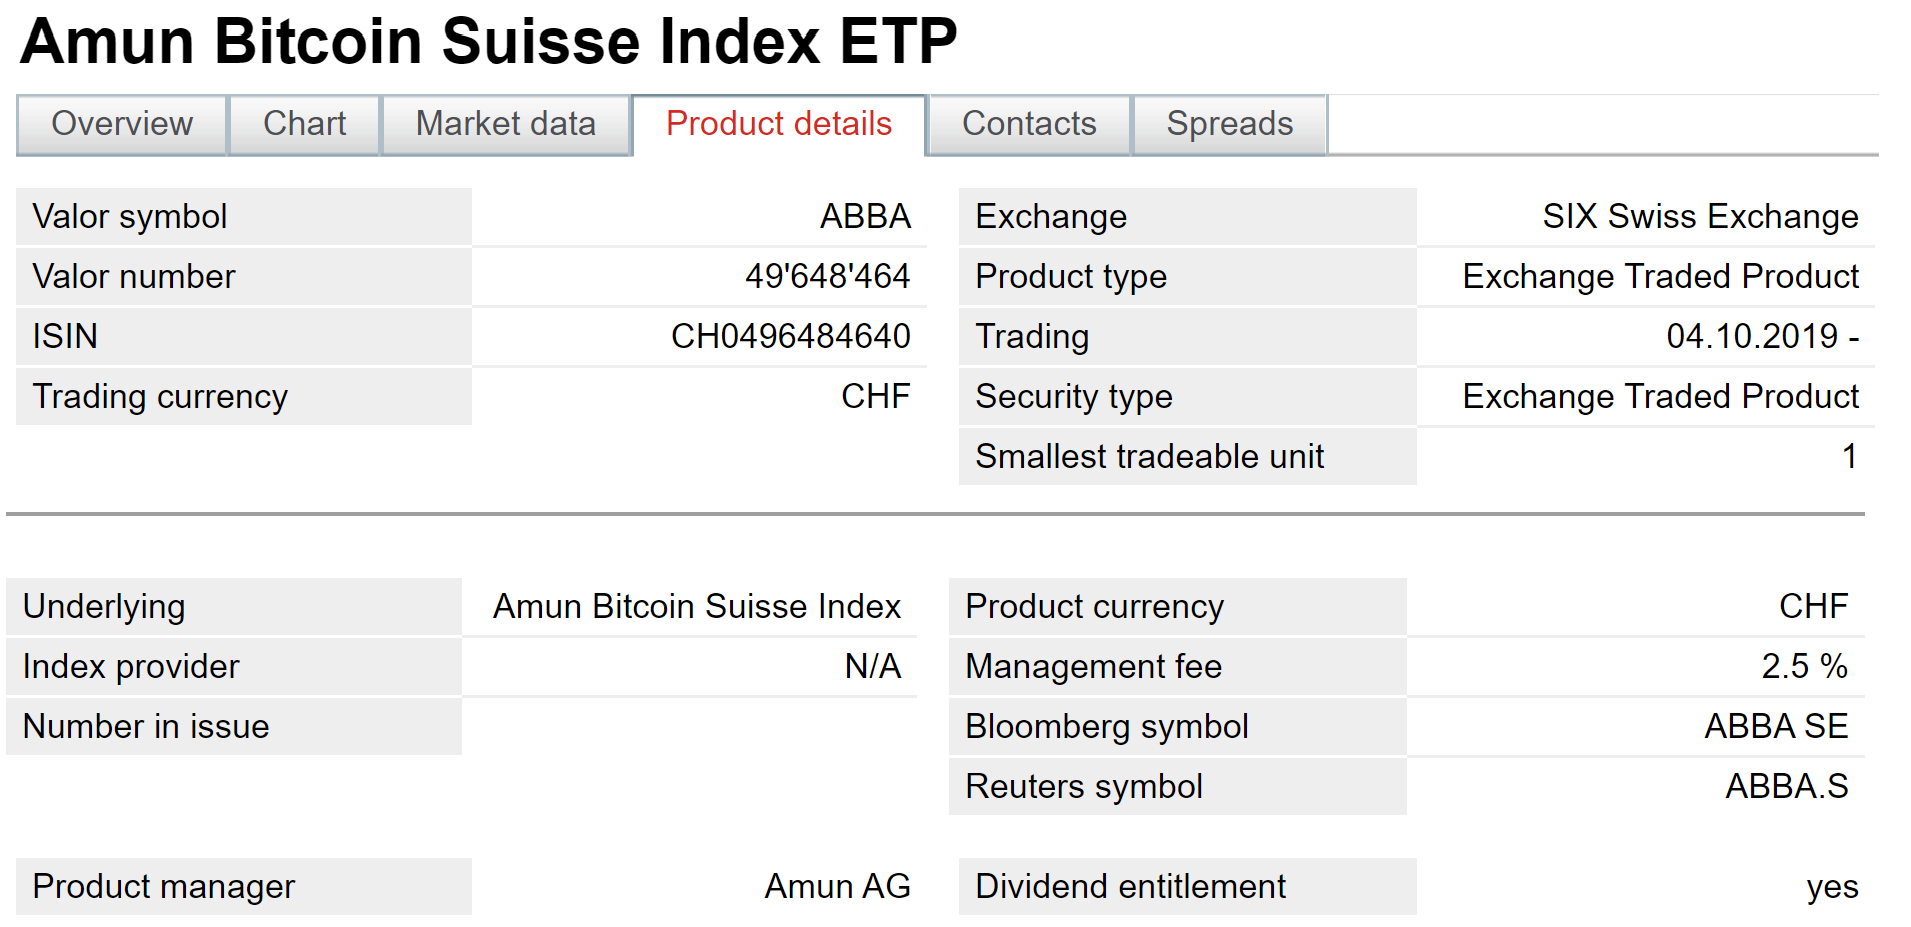 7种加密货币ETP现在在瑞士主要证券交易所交易